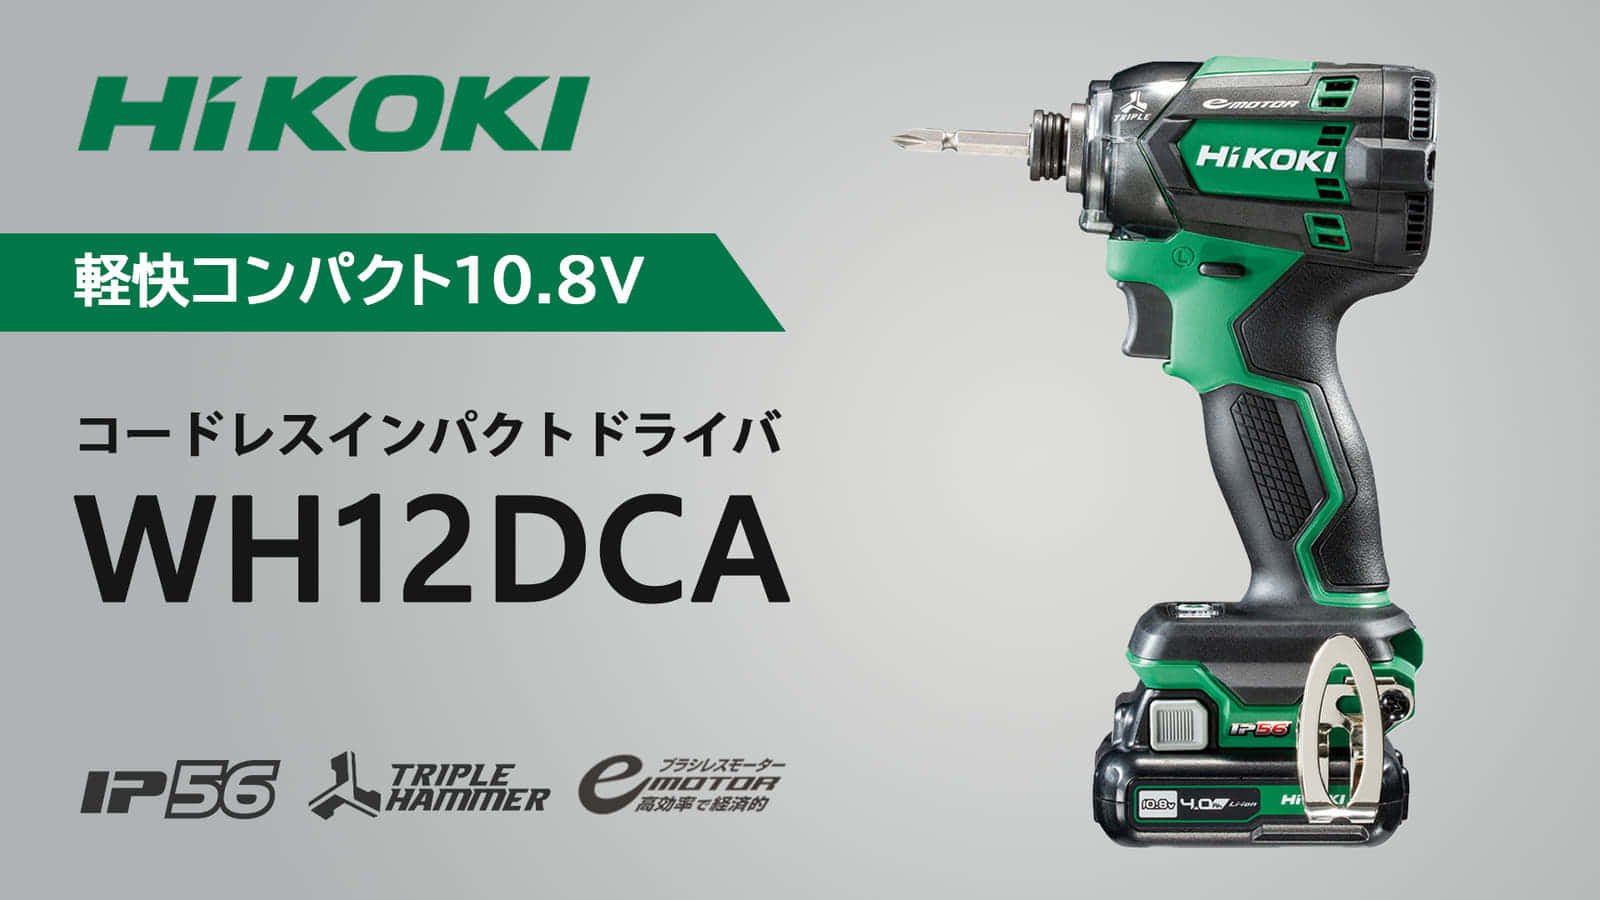 HiKOKI WH12DCA コードレスインパクトドライバを発売、軽快コンパクト 